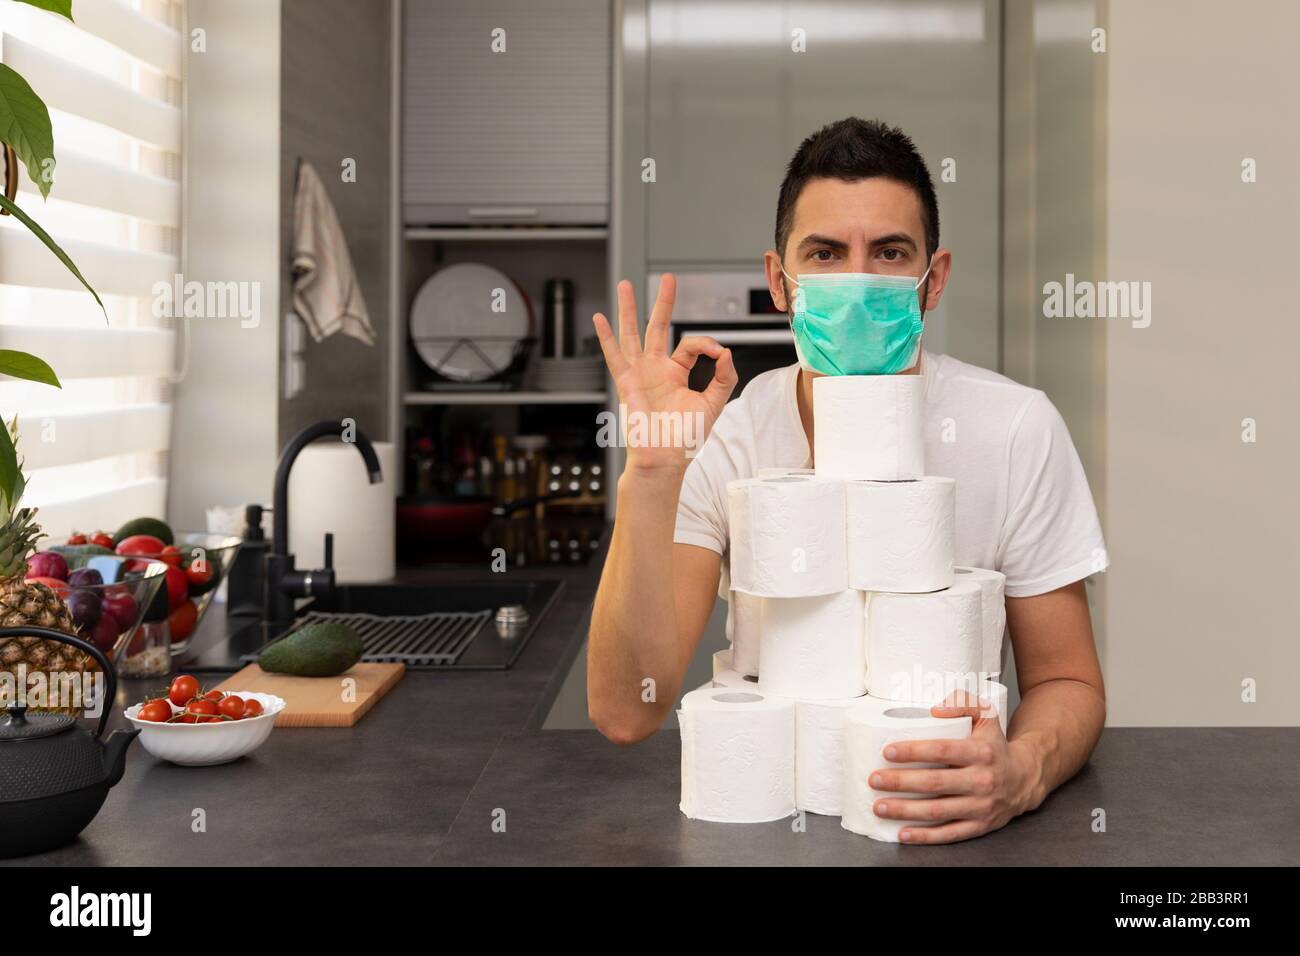 Ein Mann freut sich über das erworbene toilettenpapier wegen der Panik und des Mangels, der durch den Ausbruch des Kovid19-Virus verursacht wurde. Konzeptionelles Foto über Stockfoto